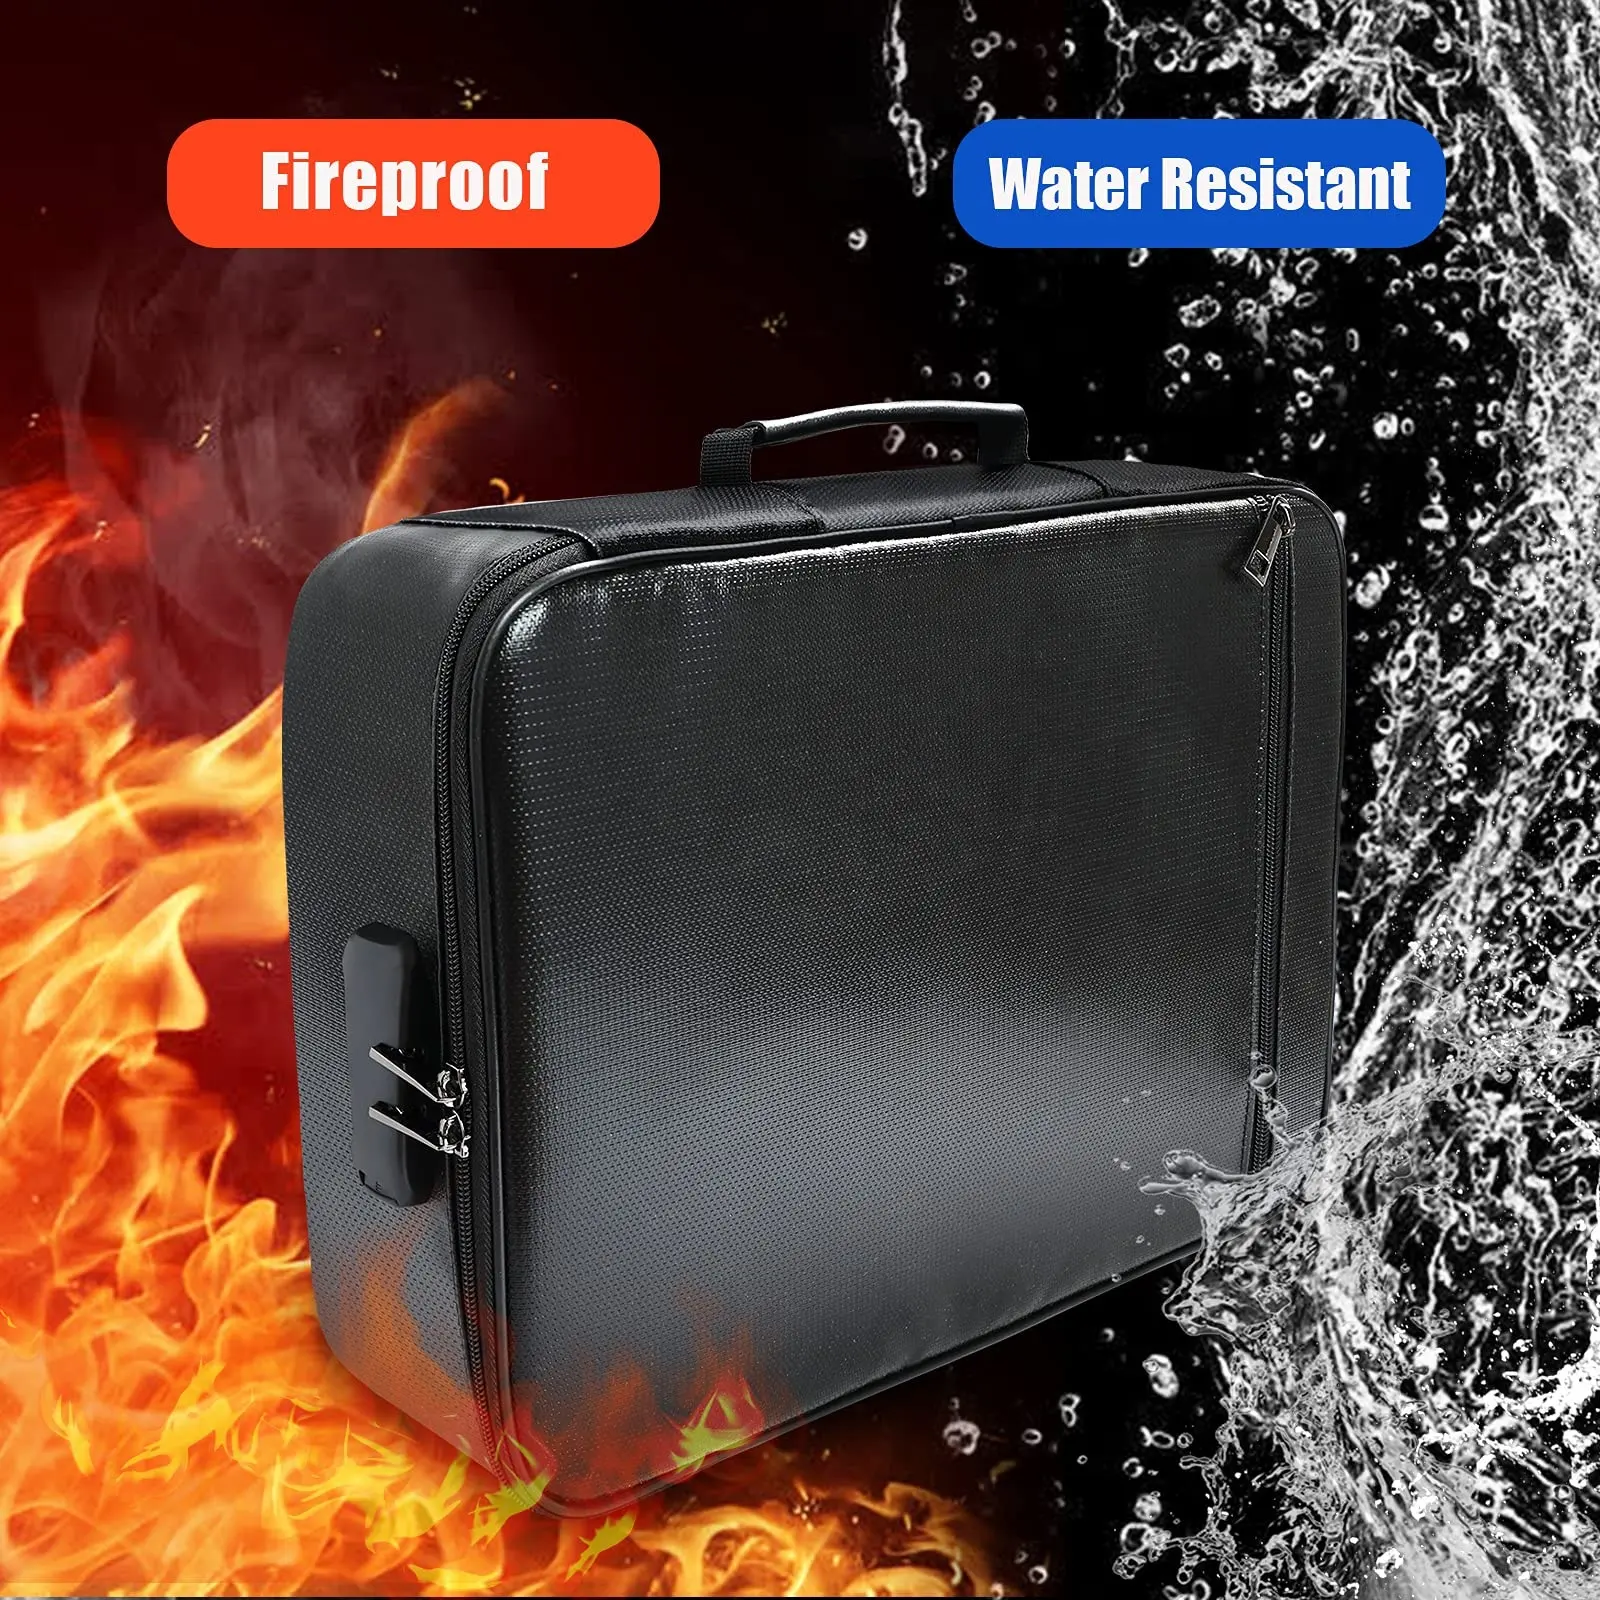 Uw Eigen Logo Brandwerende Document Tas Waterbestendig Fire Proof 3-Layer Bestand Storage Case Organizer Bag